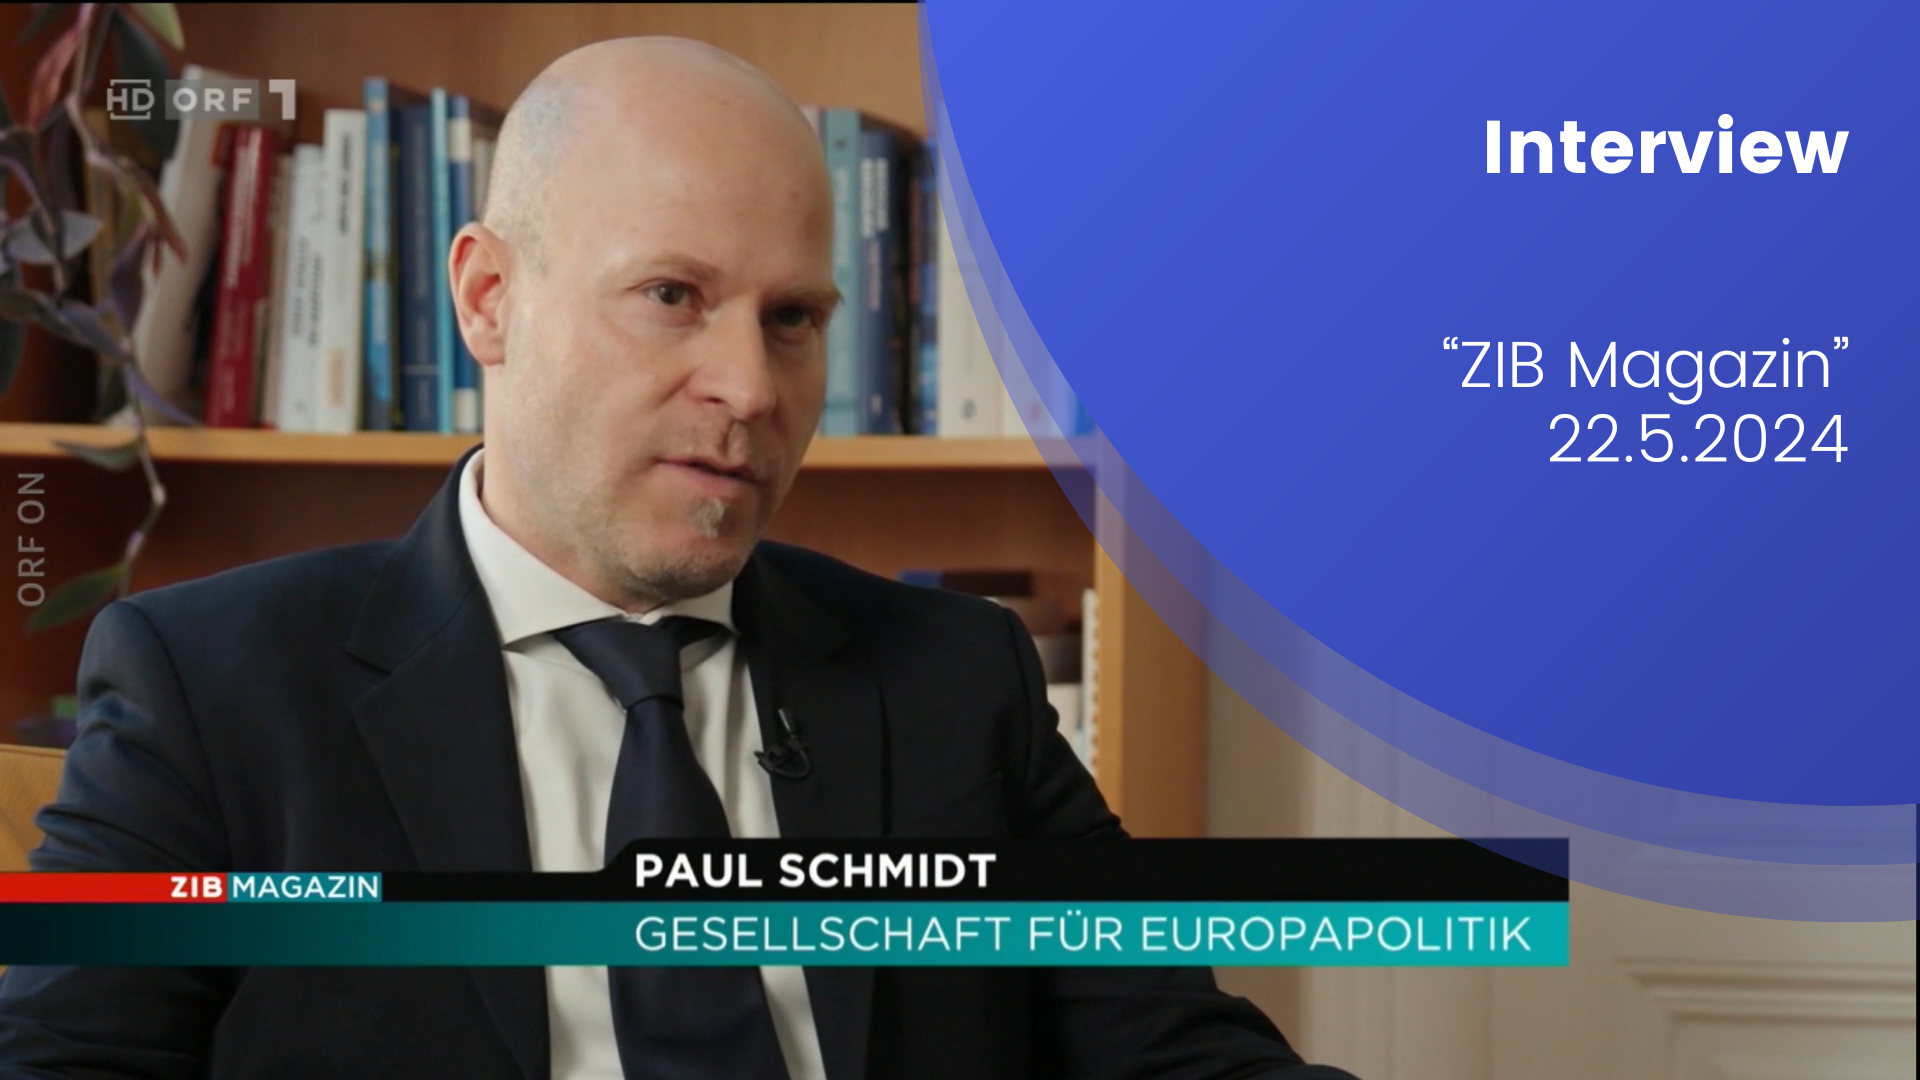 Paul Schmidt gibt sitzend ein Interview. Textaufschriften sind: "Interview ZIB Magazin, 22.5.2024" und die Einblendung des ORF "ZIB Magazin, Paul Schmidt, Gesellschaft für Europapolitik"